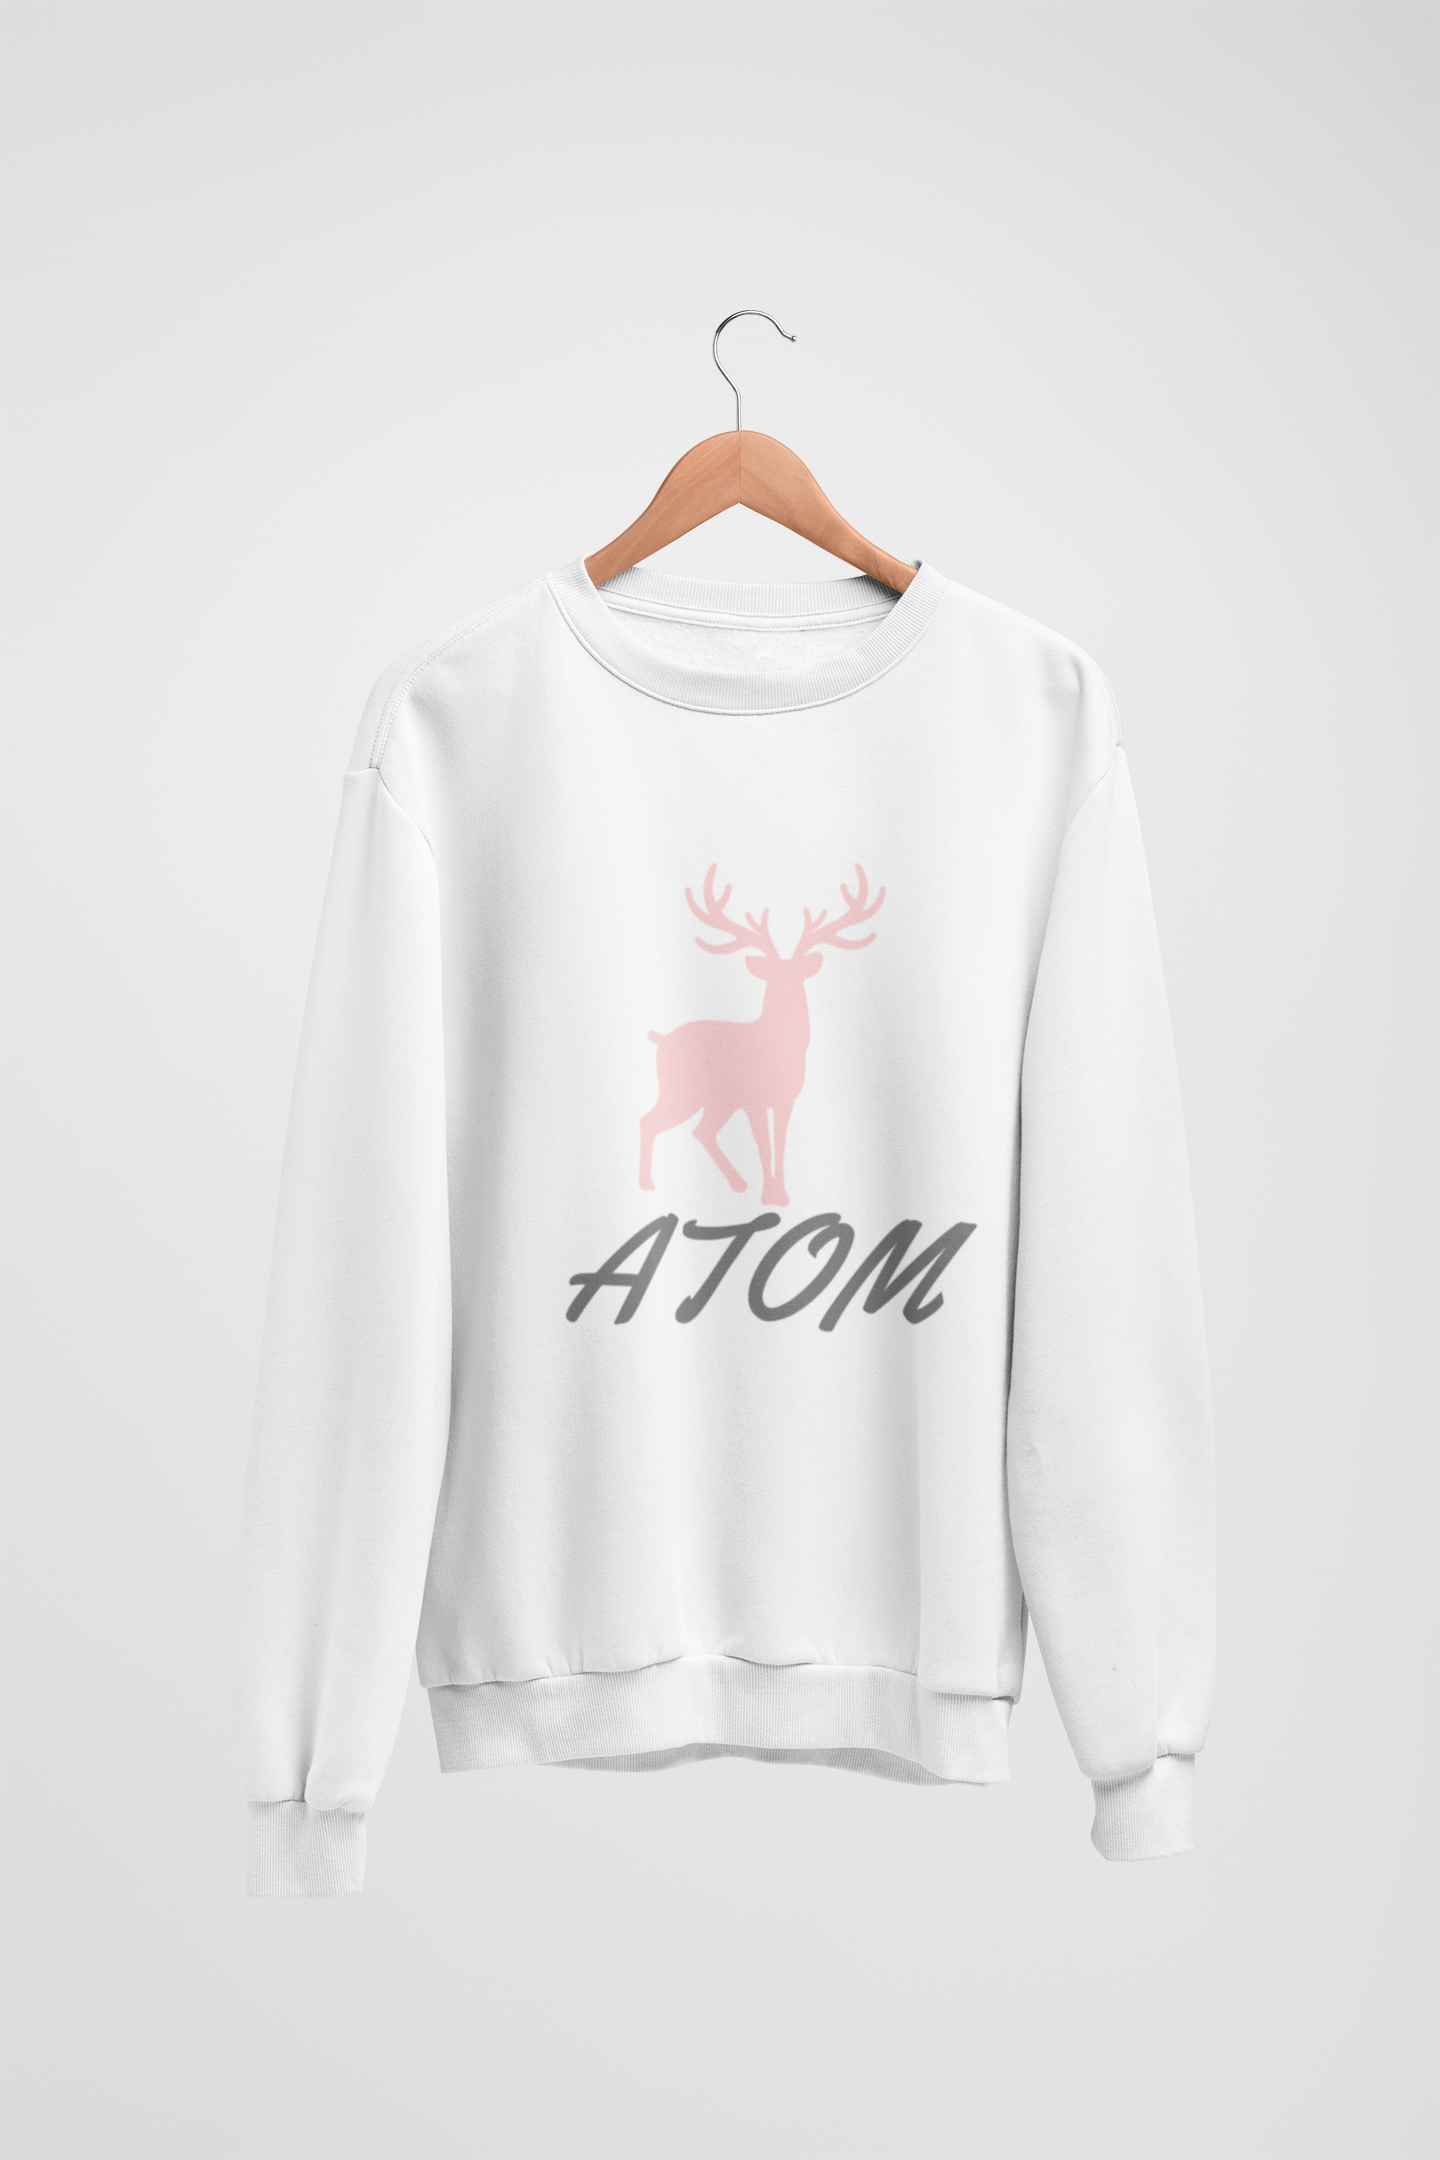 Pink ATOM Signature White Sweatshirt For Women